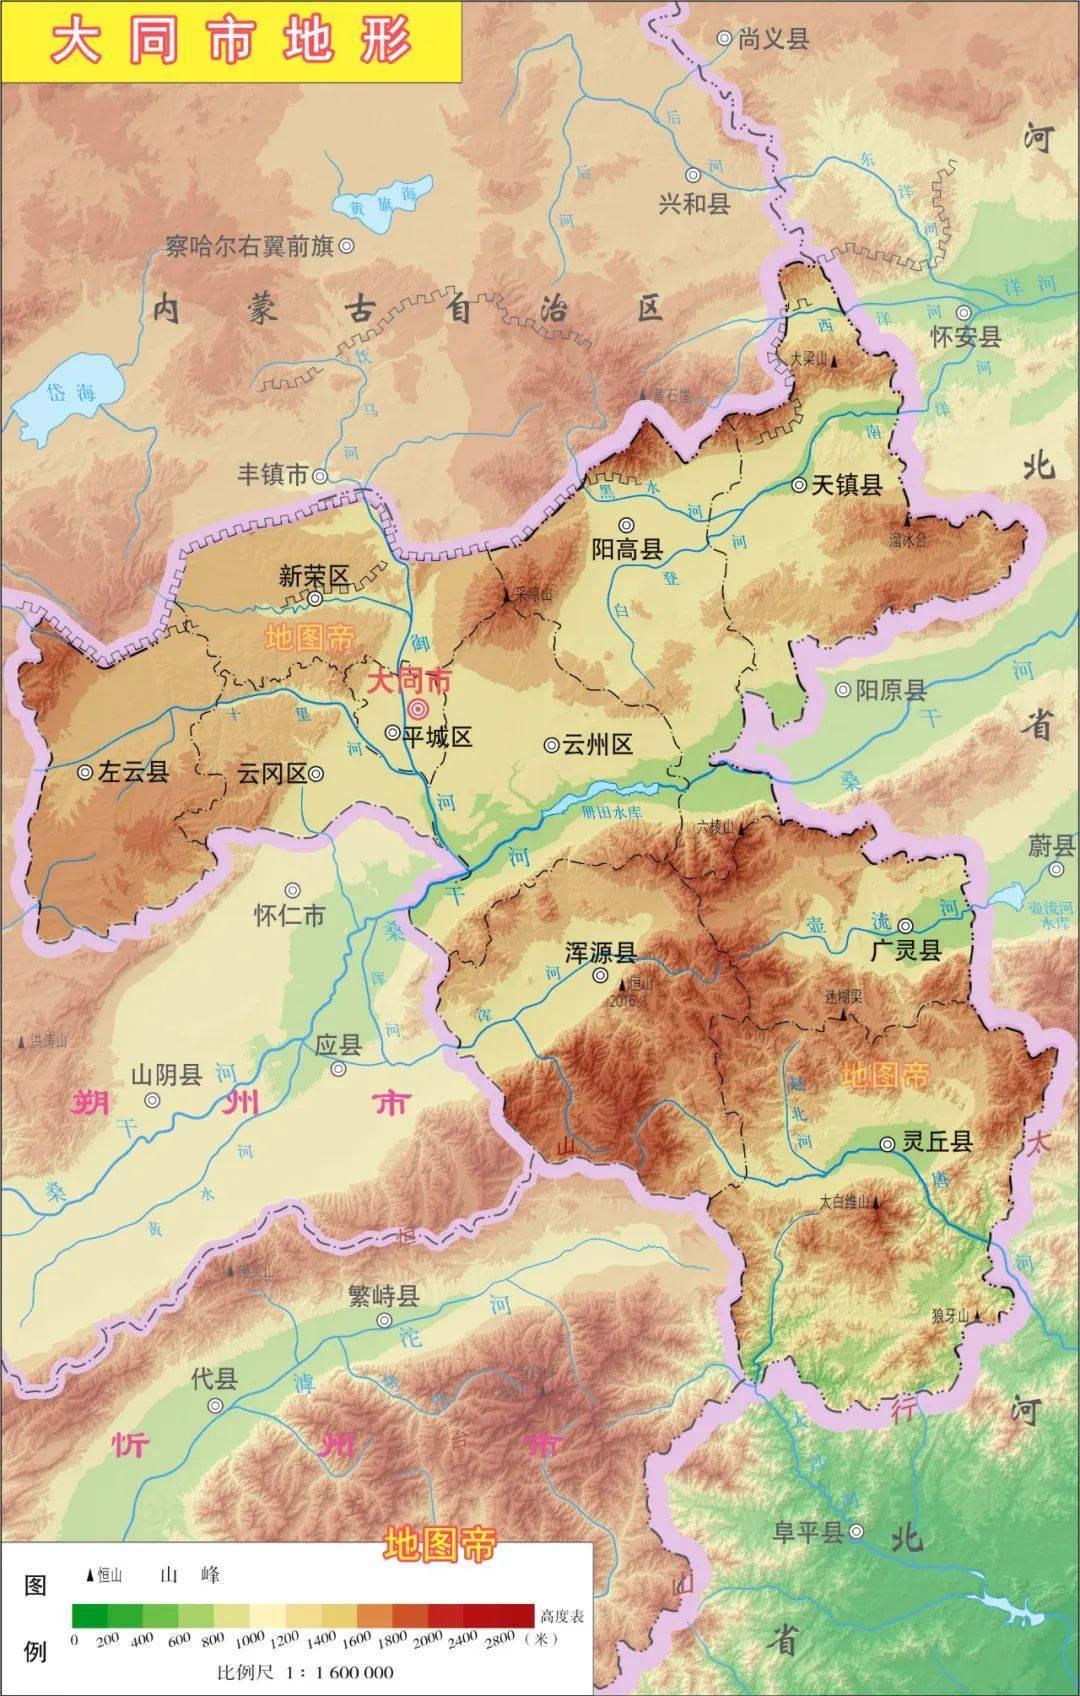 山西省是如何劃分晉北、晉中、晉南的？ 